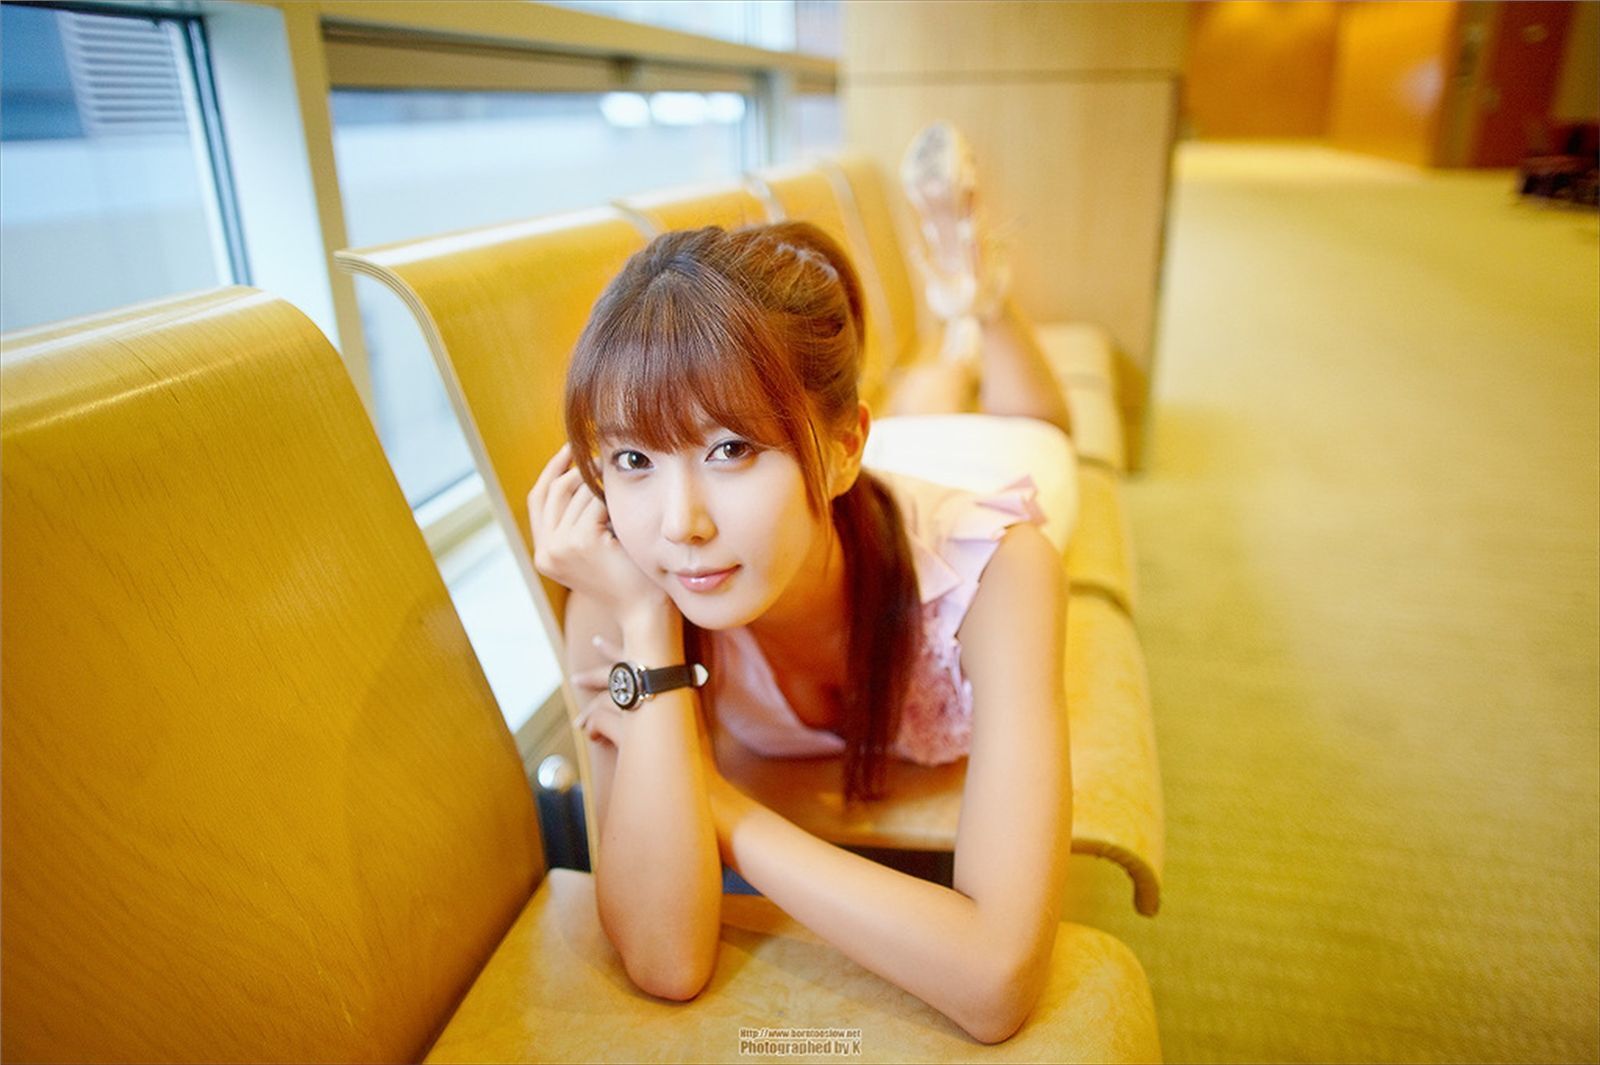 South Korean supermodel Xu Yunmei's recent photo collection